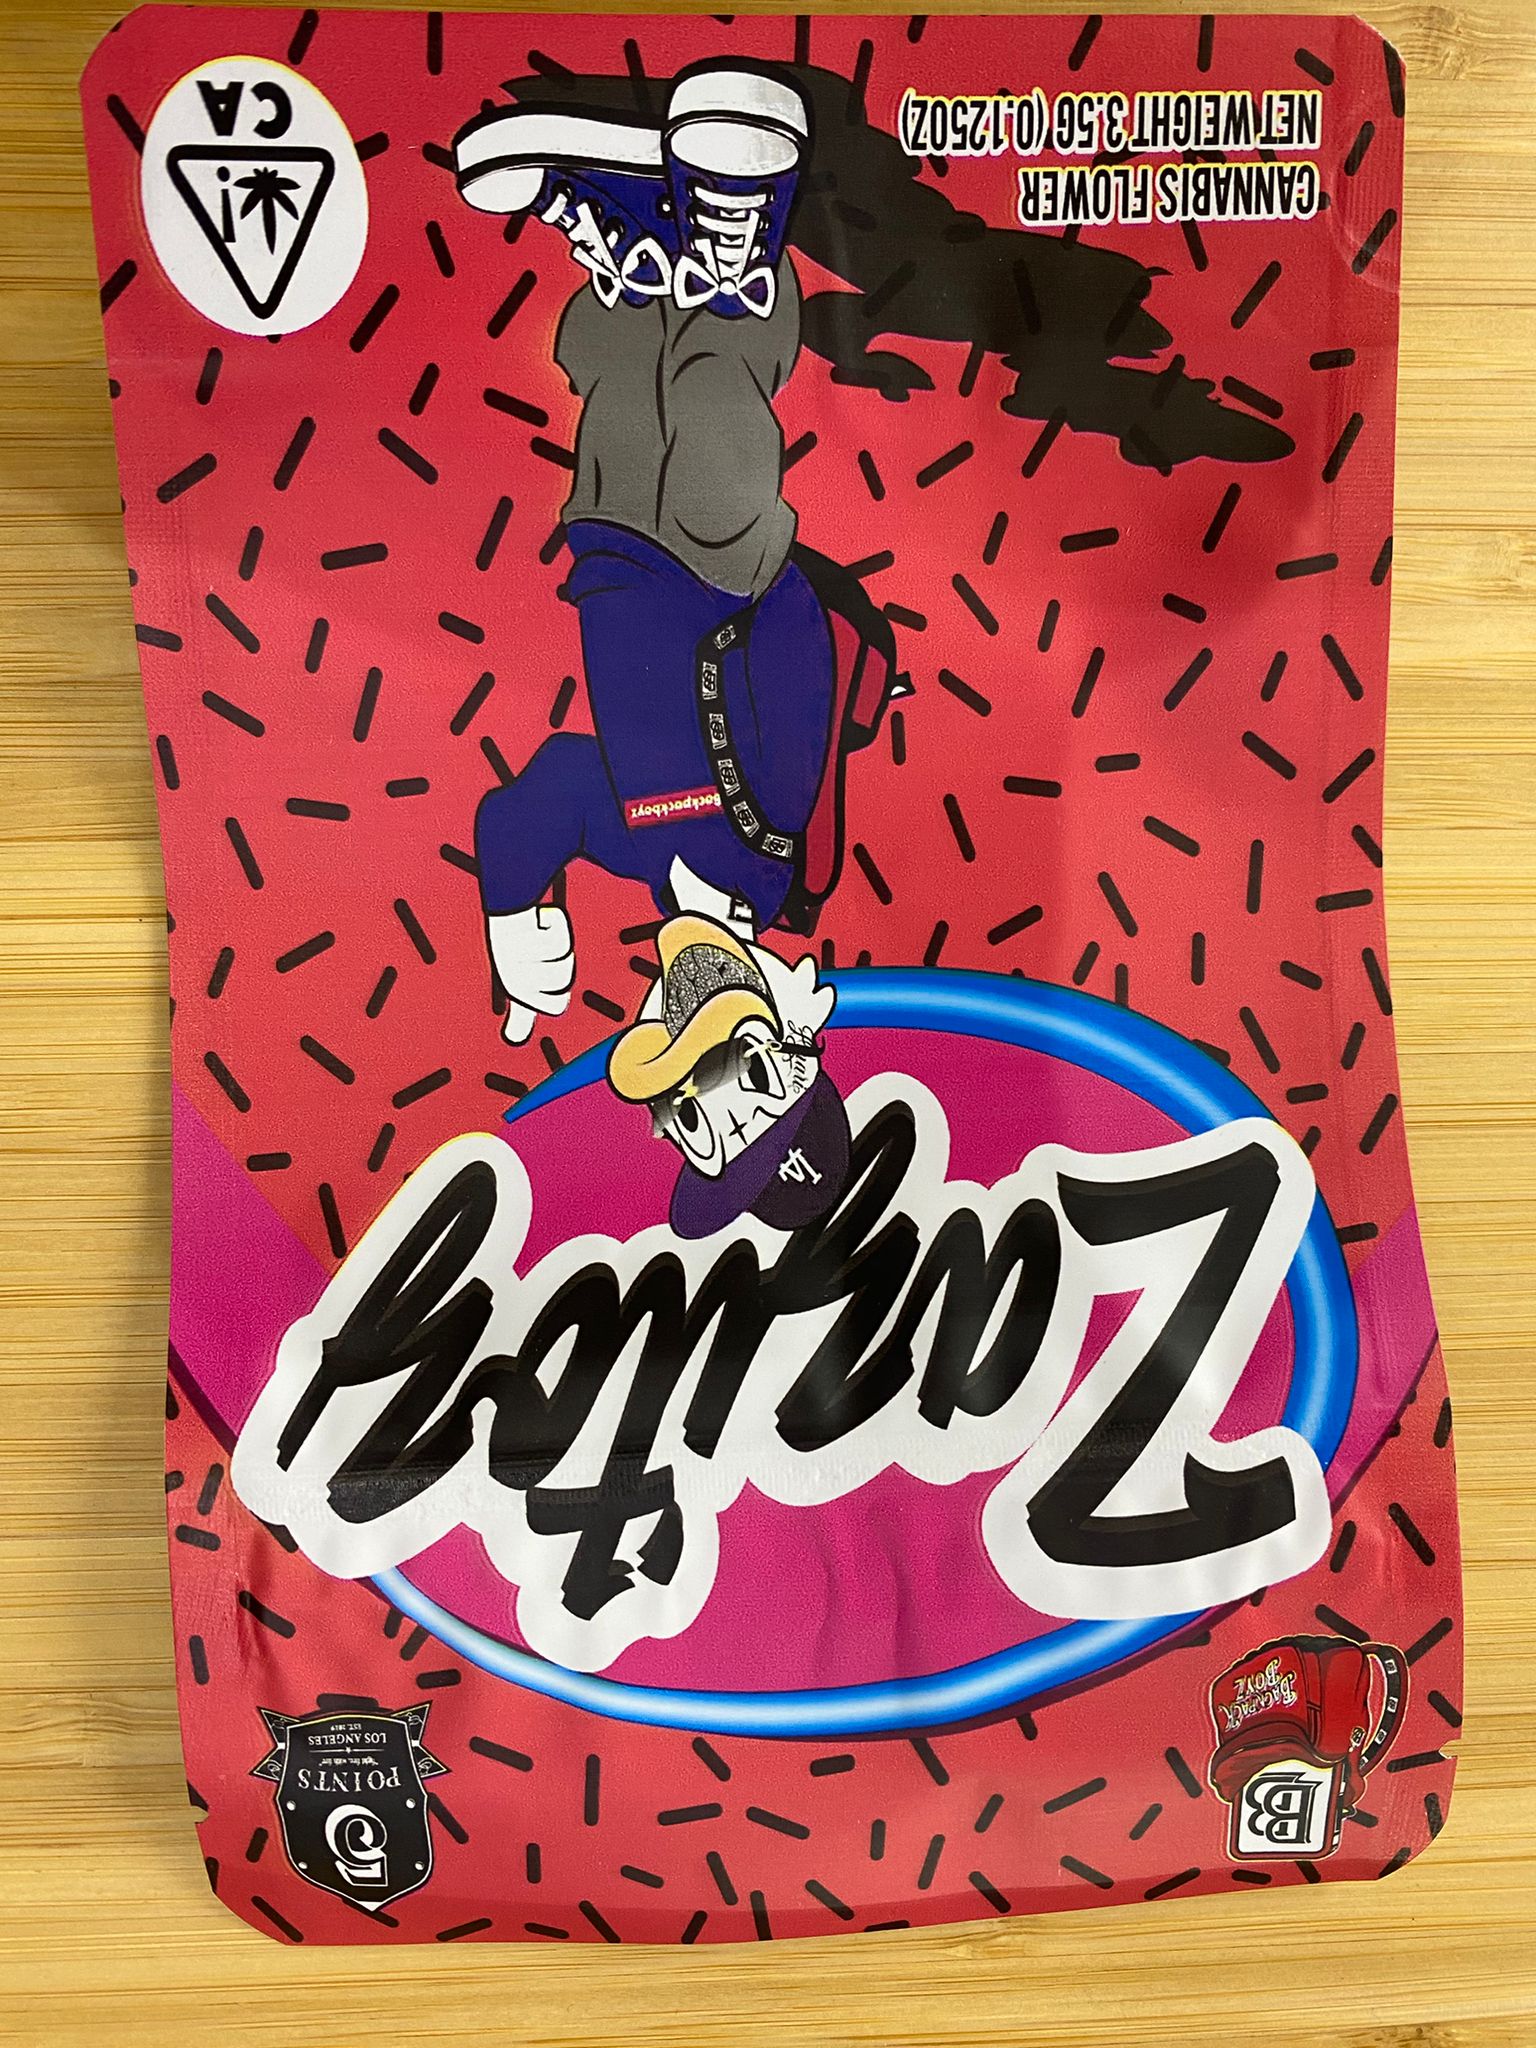 Zazitoz strain by Backpackboyz for sale